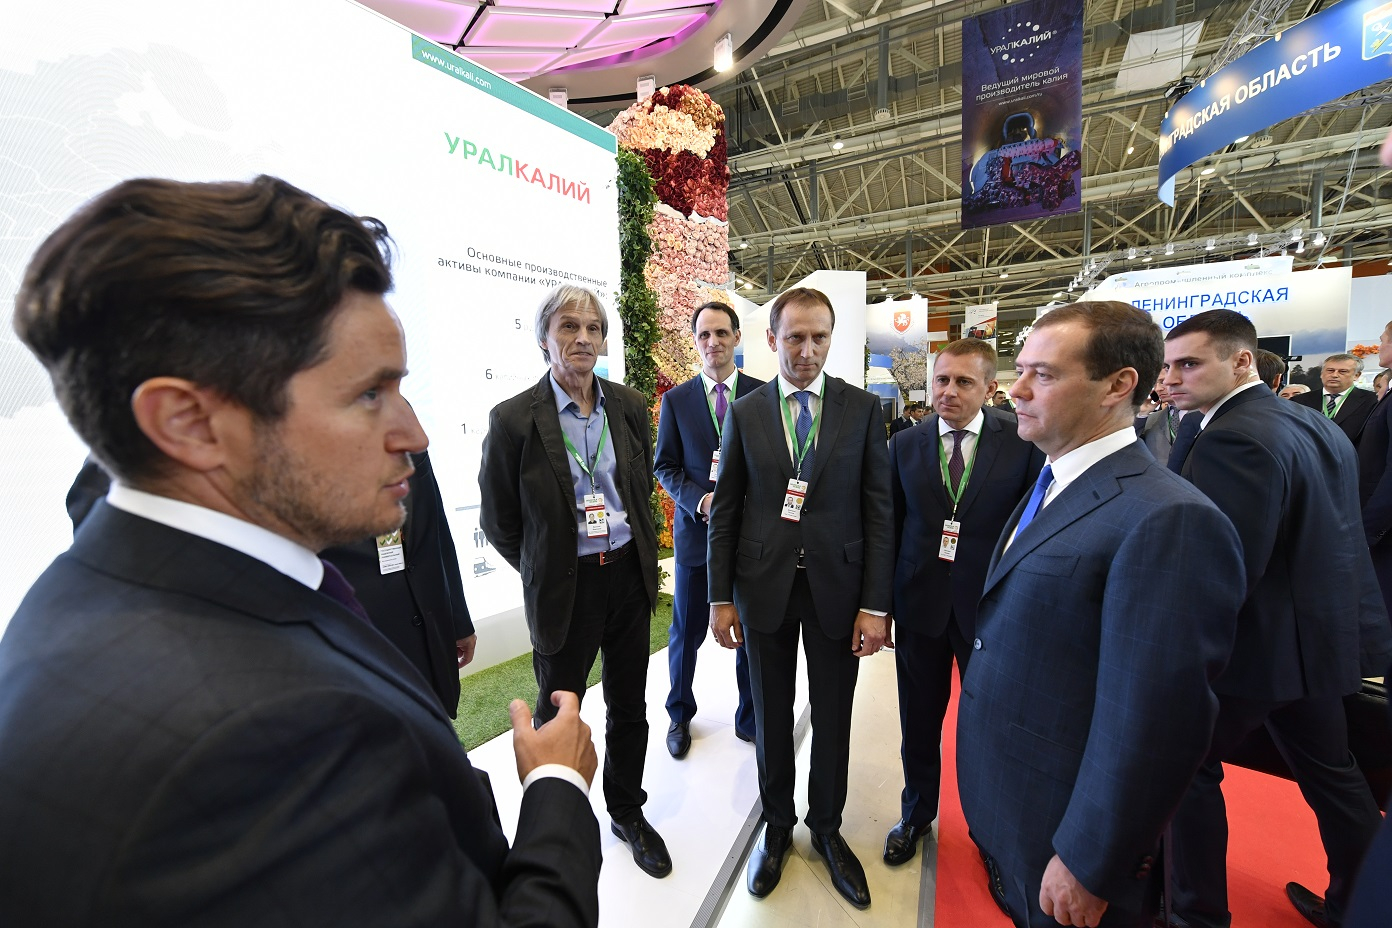 Дмитрий Медведев посетил стенд компании «УРАЛХИМ» на выставке «Золотая осень»  и ознакомился с инновационными проектами Фонда «Сколково»